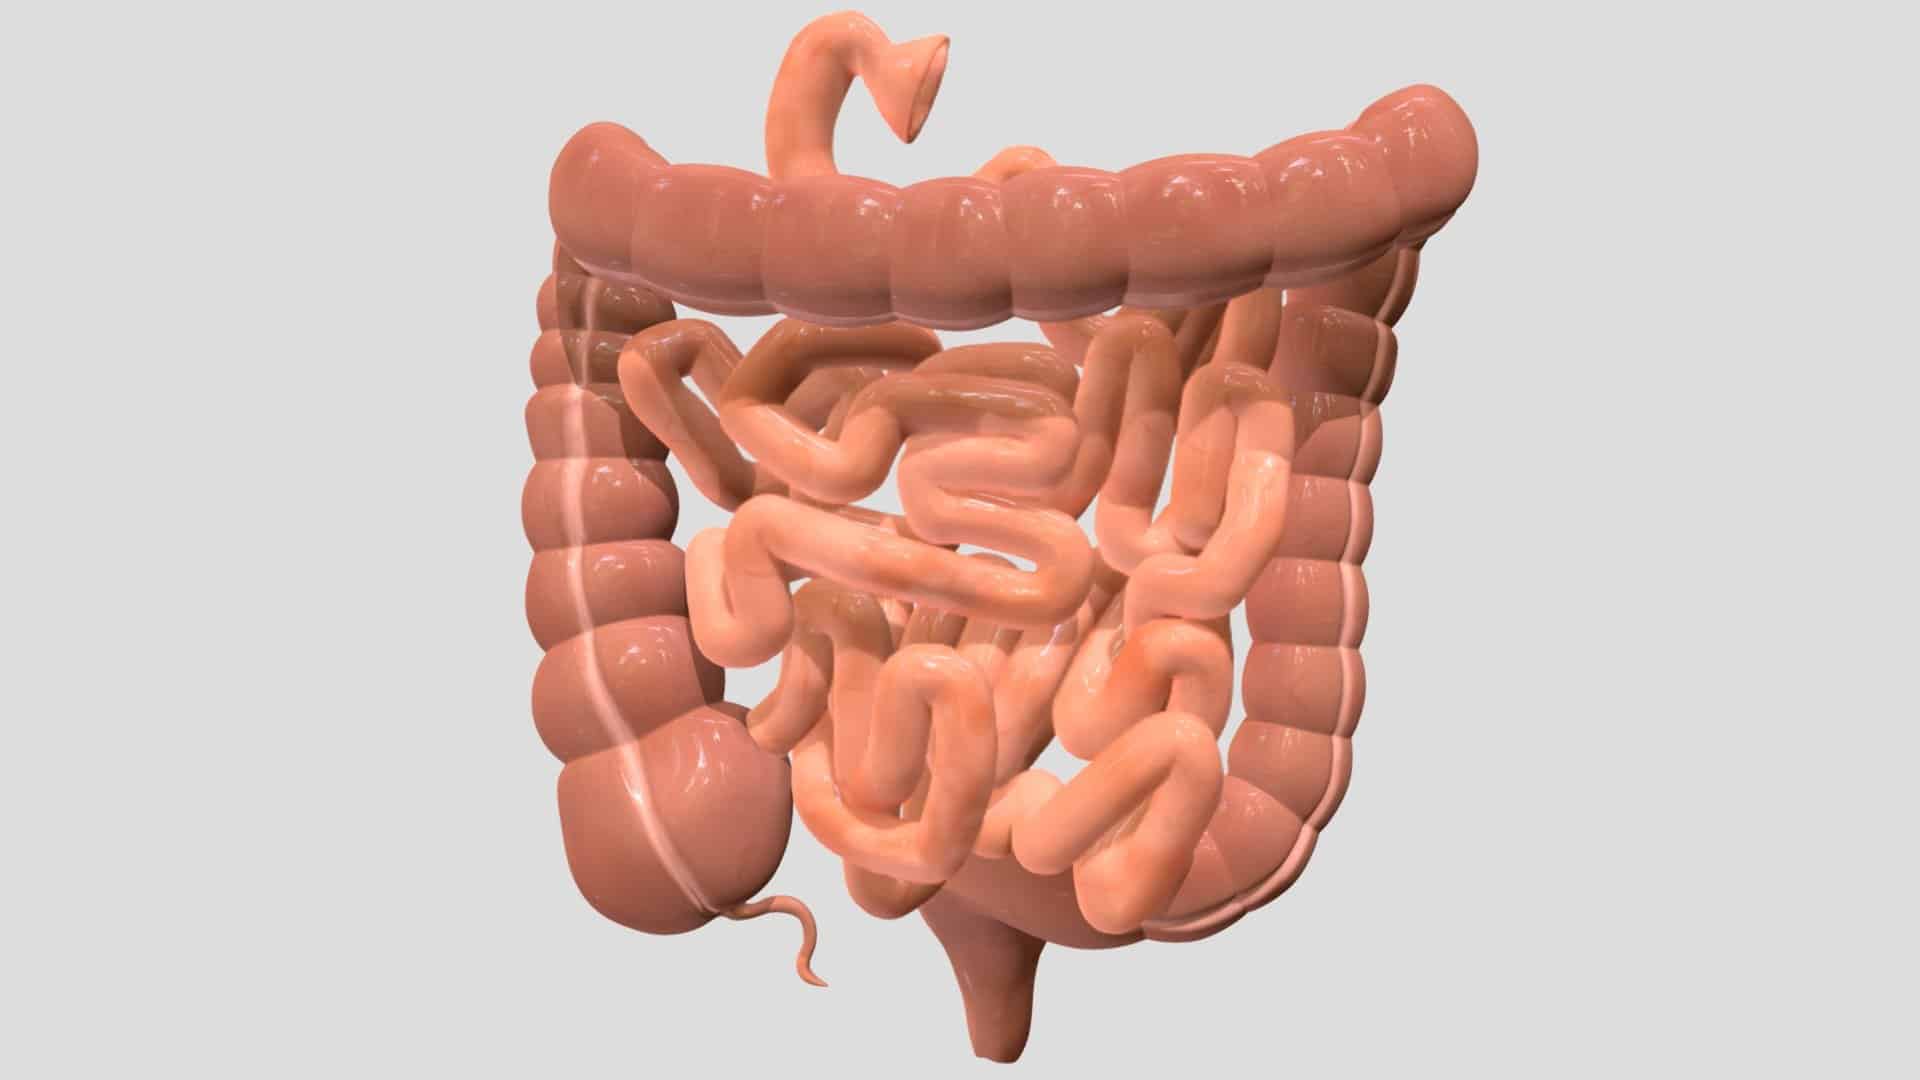  Descubrir el tamaño del intestino humano y su relación con el peso